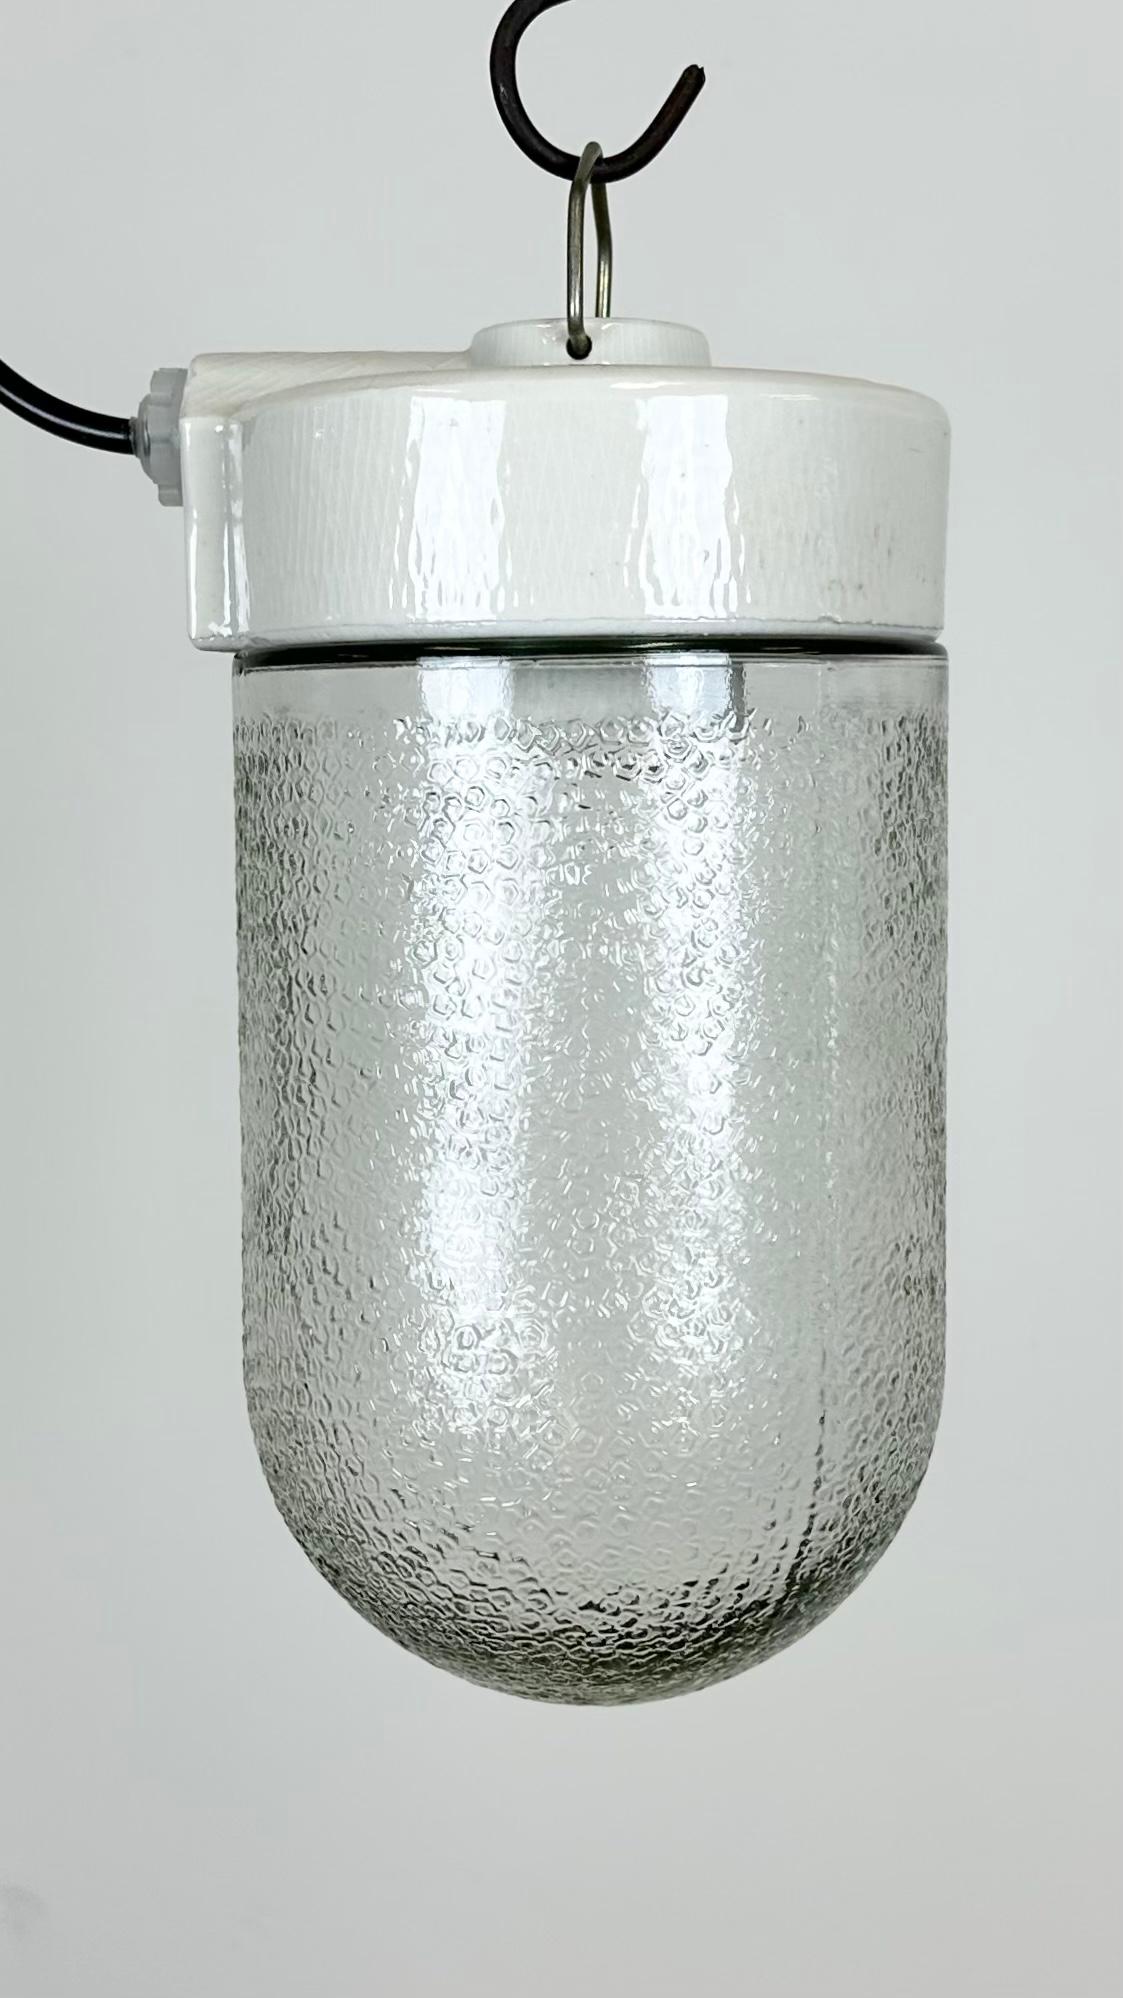 Lampe industrielle vintage fabriquée en Pologne dans les années 1970. Il est doté d'un plateau en porcelaine blanche et d'un couvercle en verre dépoli. La douille nécessite des ampoules E27/ E26. Un nouveau fil. Le poids de la lampe est de 1,3 kg.